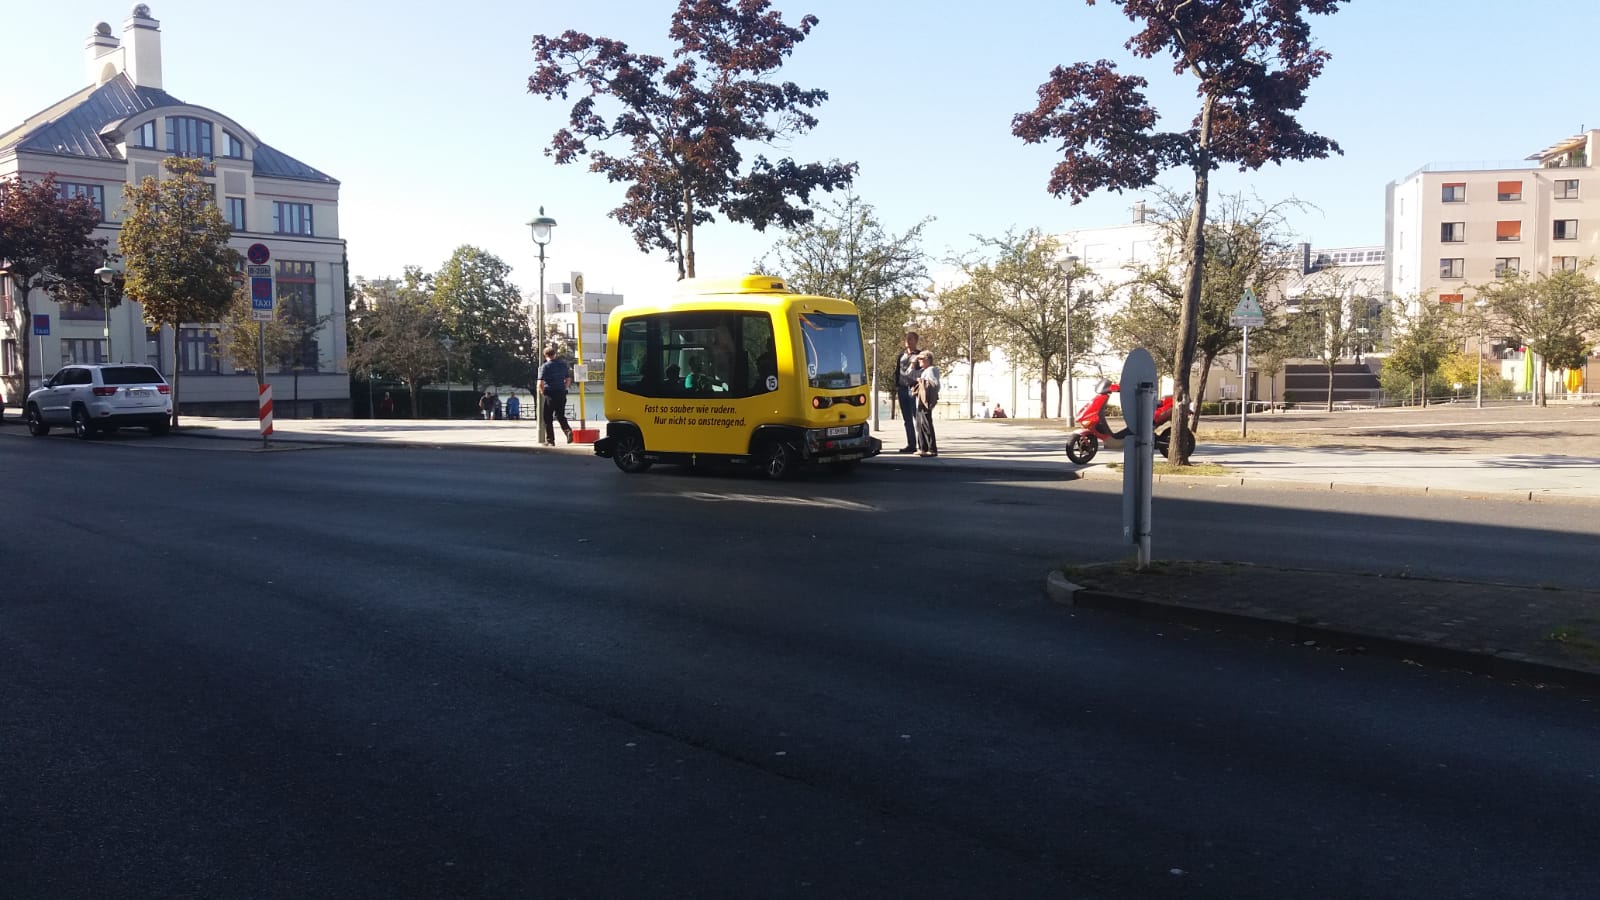 Kleines Abenteuer in Tegel! SPD-Fraktion freut sich auf den Testbetriebsstart autonomer Buse in Reinickendorf